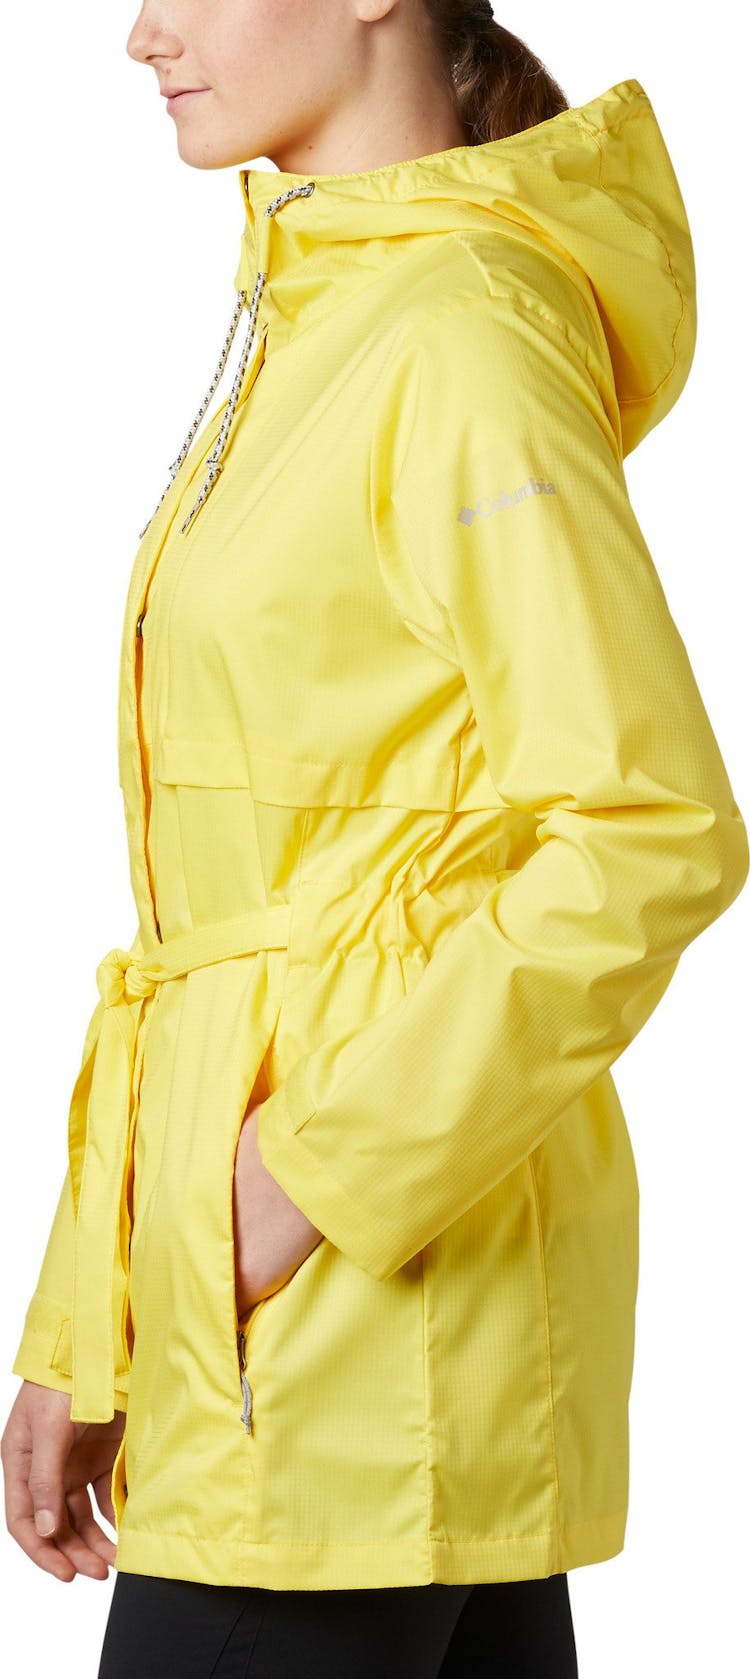 Numéro de l'image de la galerie de produits 3 pour le produit Manteau de pluie Pardon My Trench - Femme